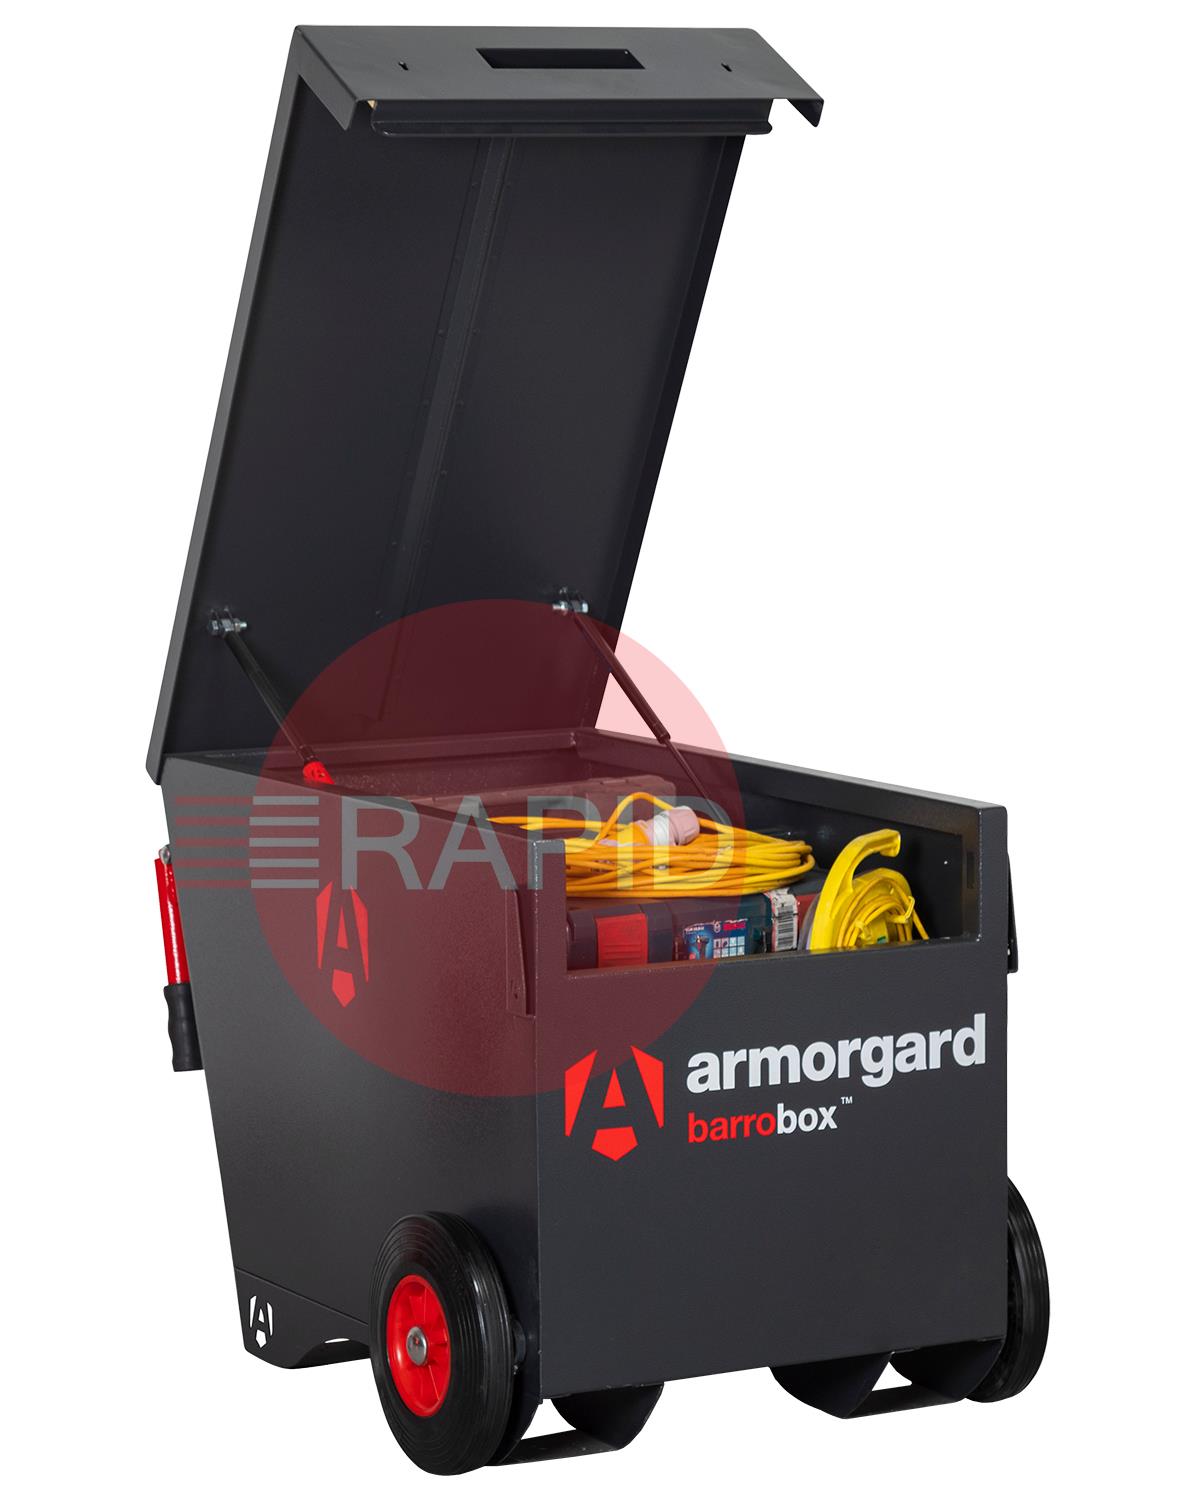 BB2  Armorgard Barrobox Mobile Site Security Box